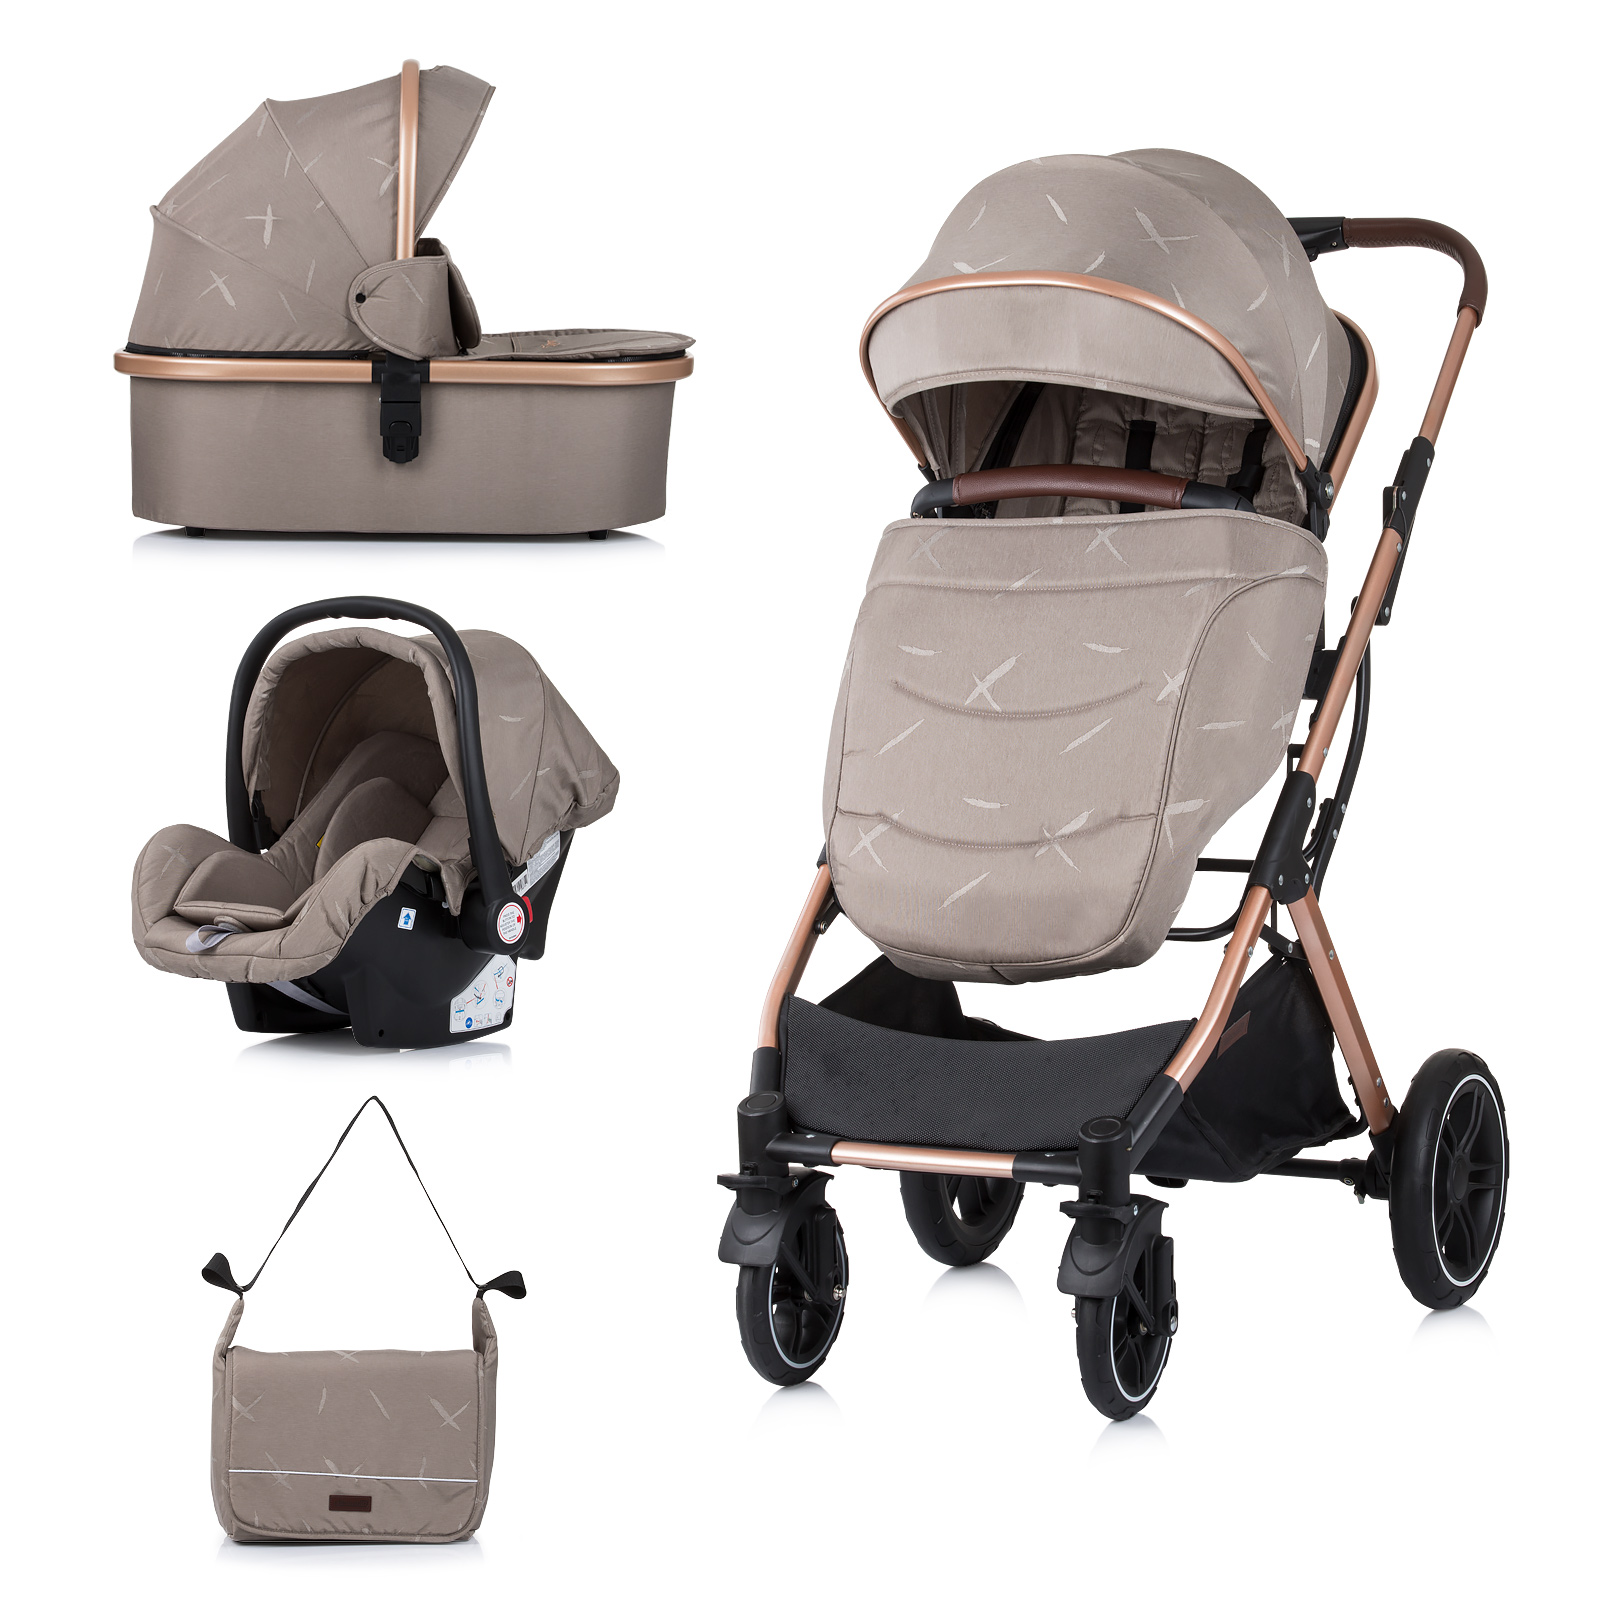 Stroller & Carseat Set “Zara” – Humus